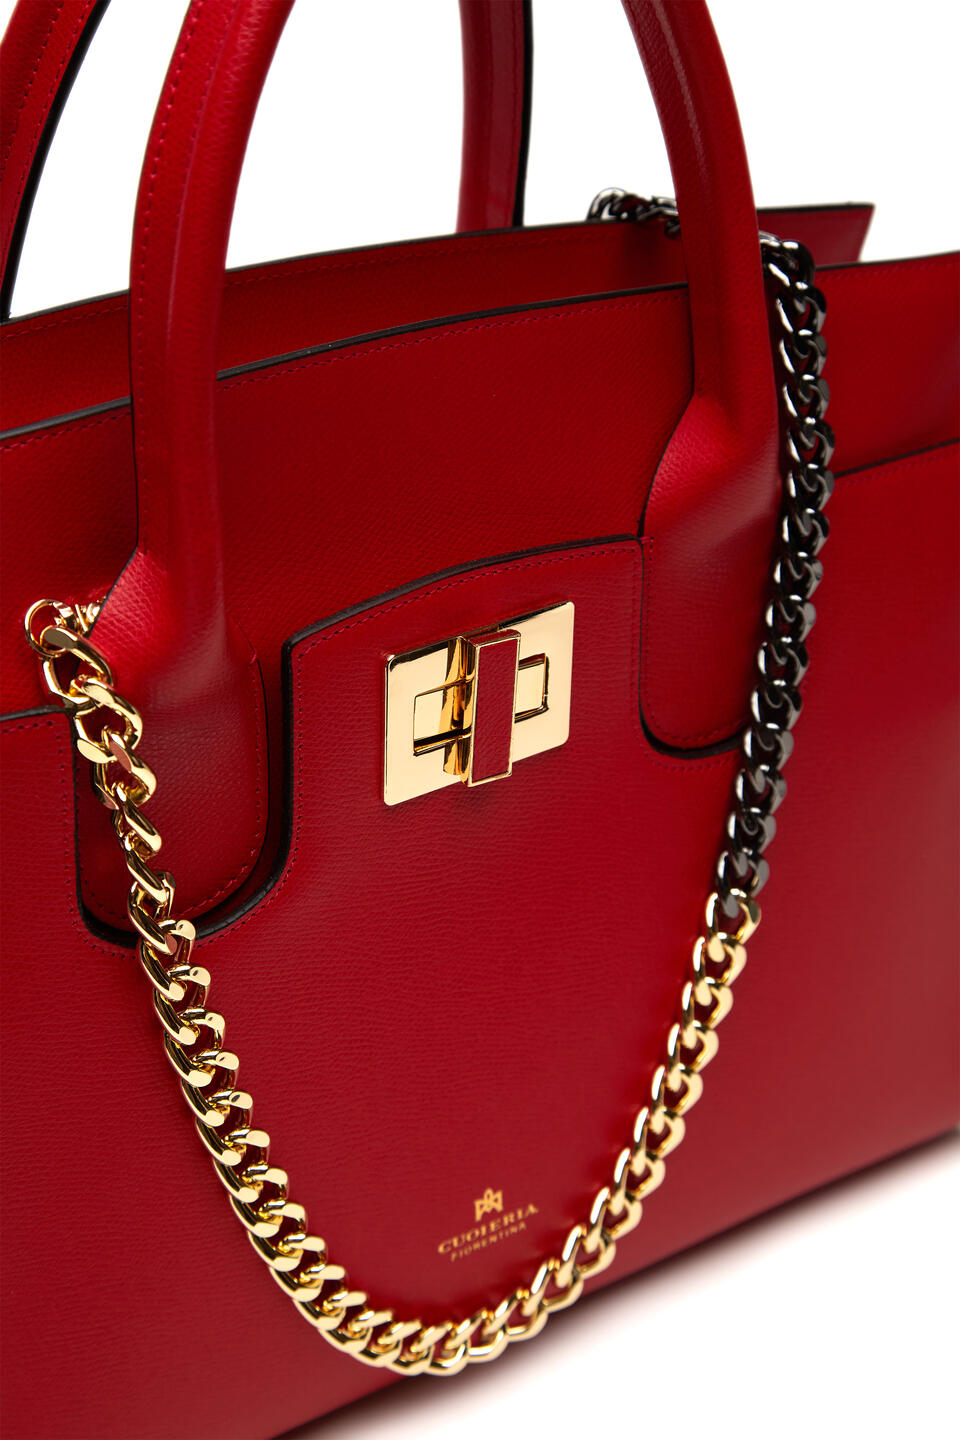 Bella large tote bag con accessorio metallo Rosso  - Tote Bag - Borse Donna - Borse - Cuoieria Fiorentina